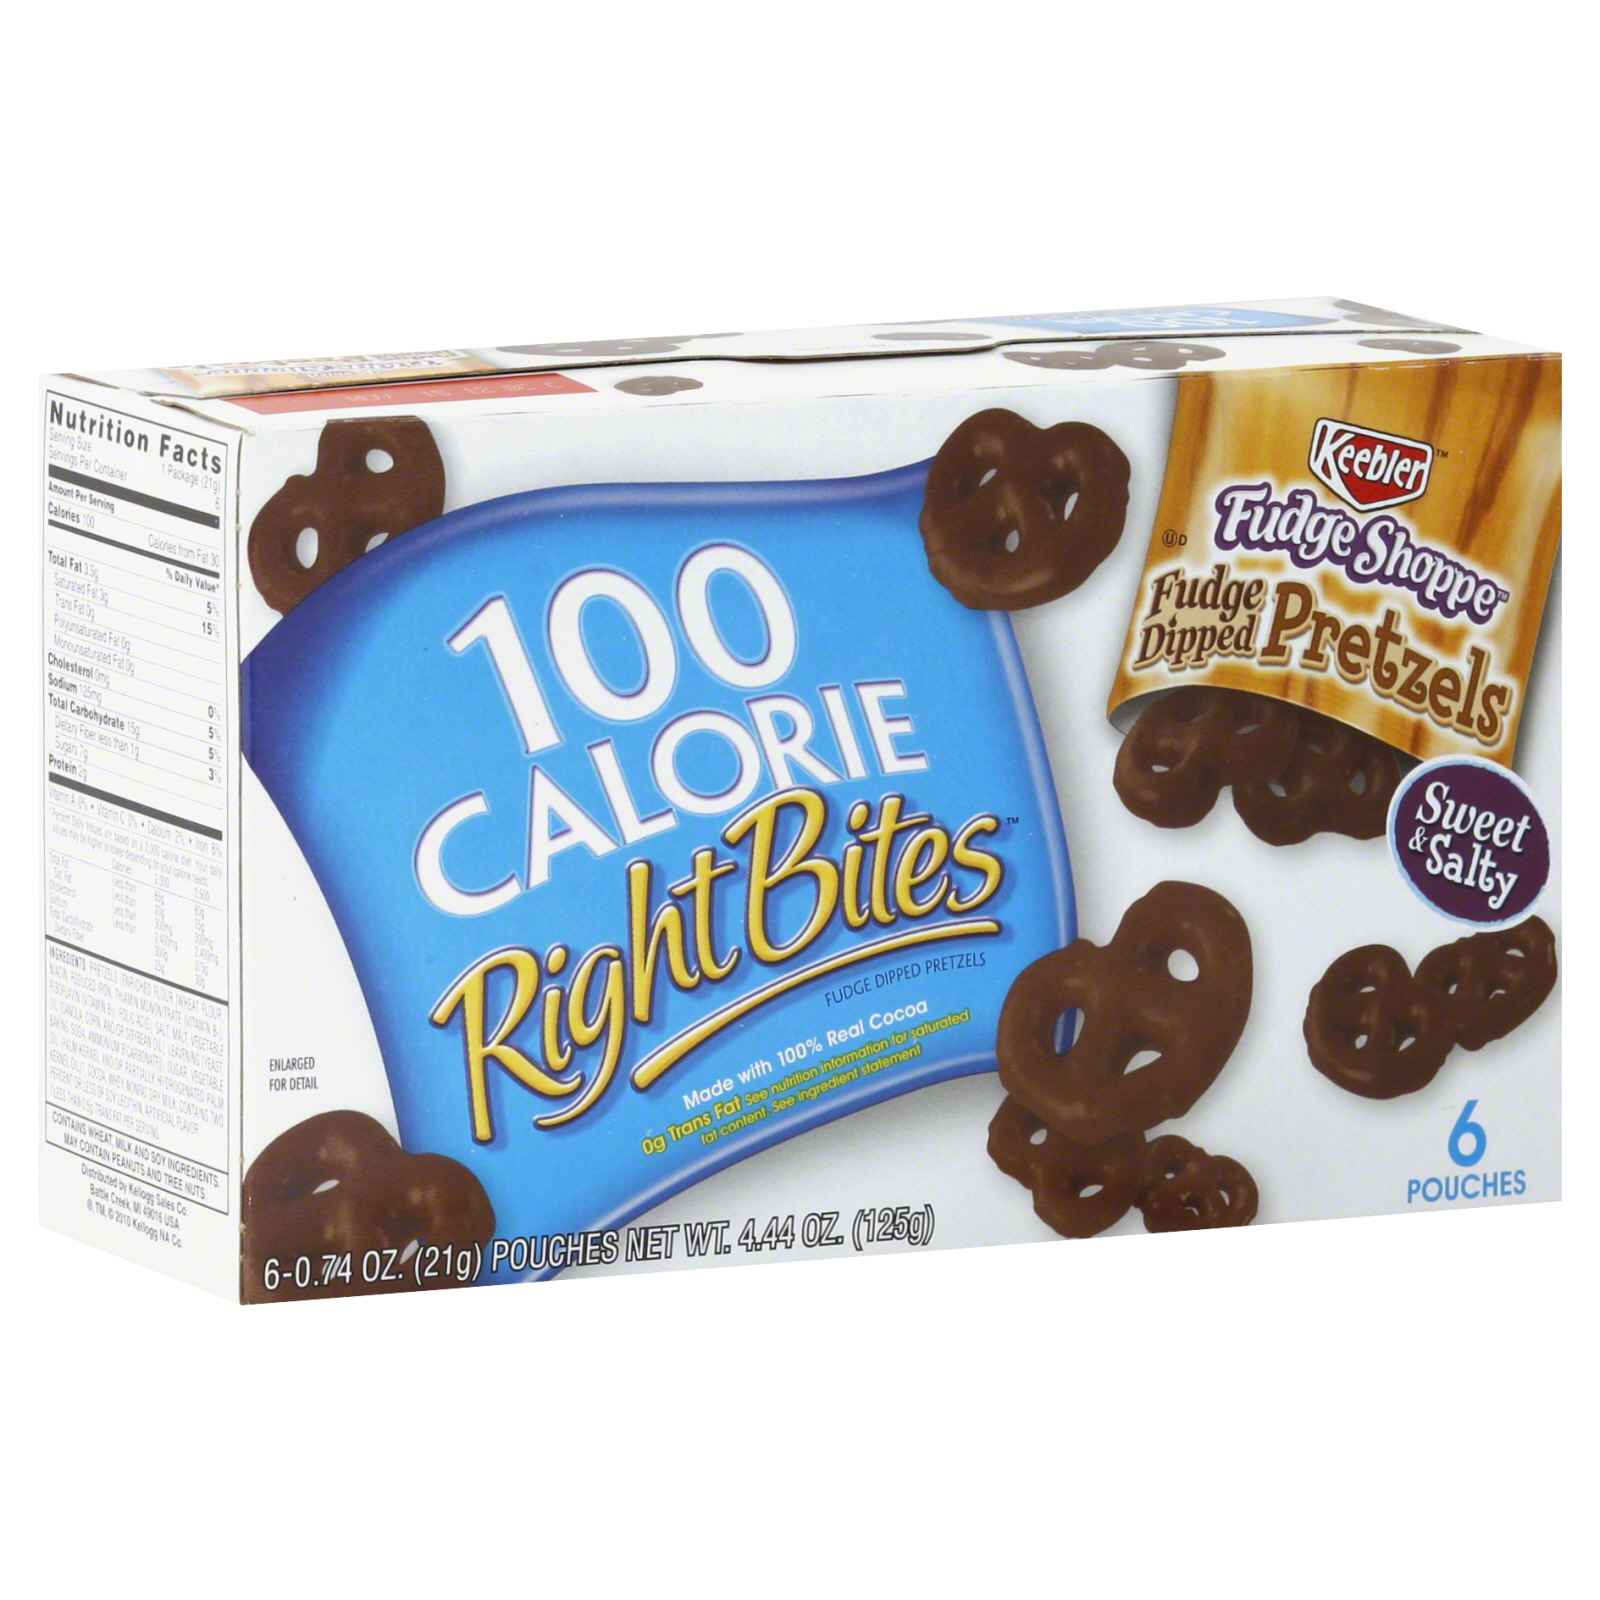 Keebler 100 Calorie Right Bites Fudge Shoppe Pretzels, Fudge Dipped 6 - 0.74 oz (21 g) pouches [4.44 oz (125 g)]